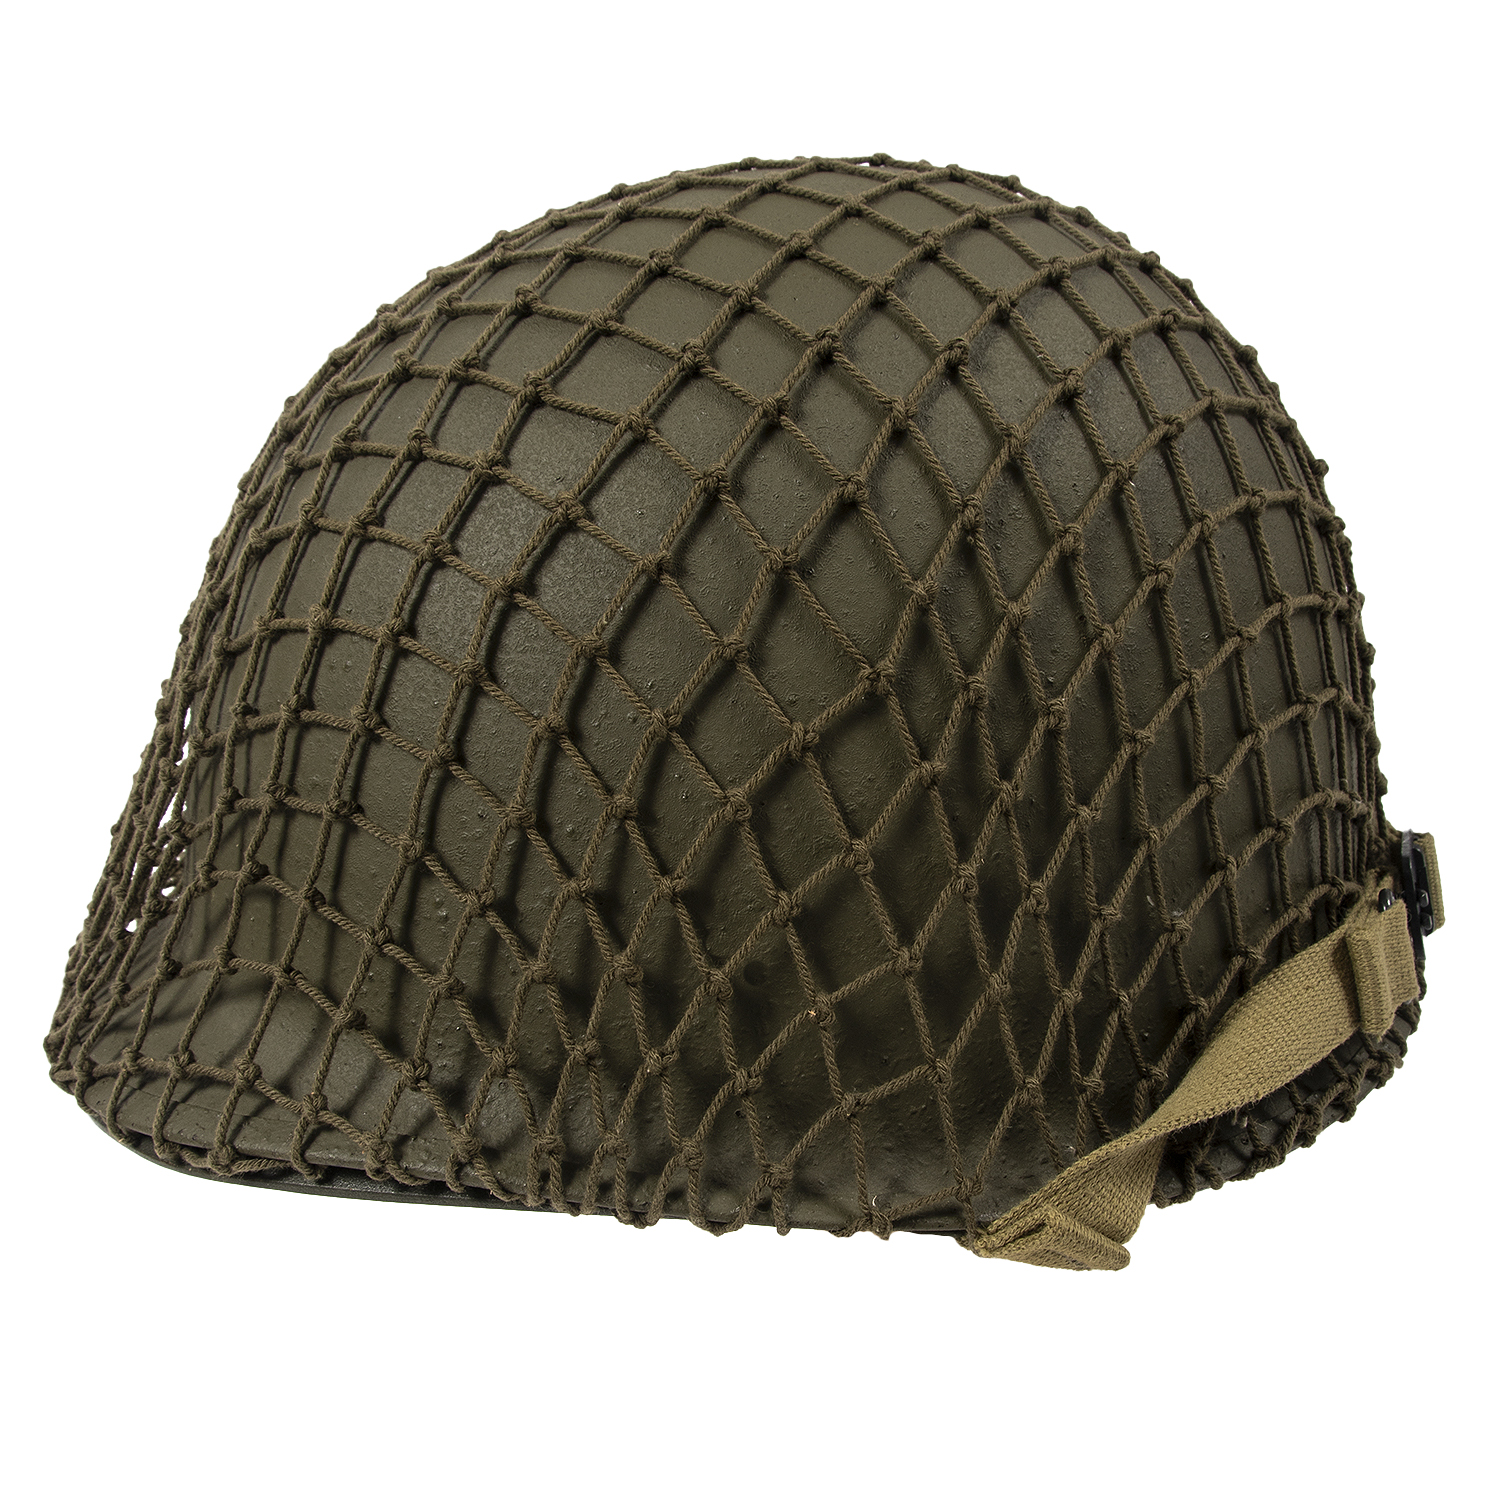 WW II vintage British olive drab helmet netting for US/British GI helmet 